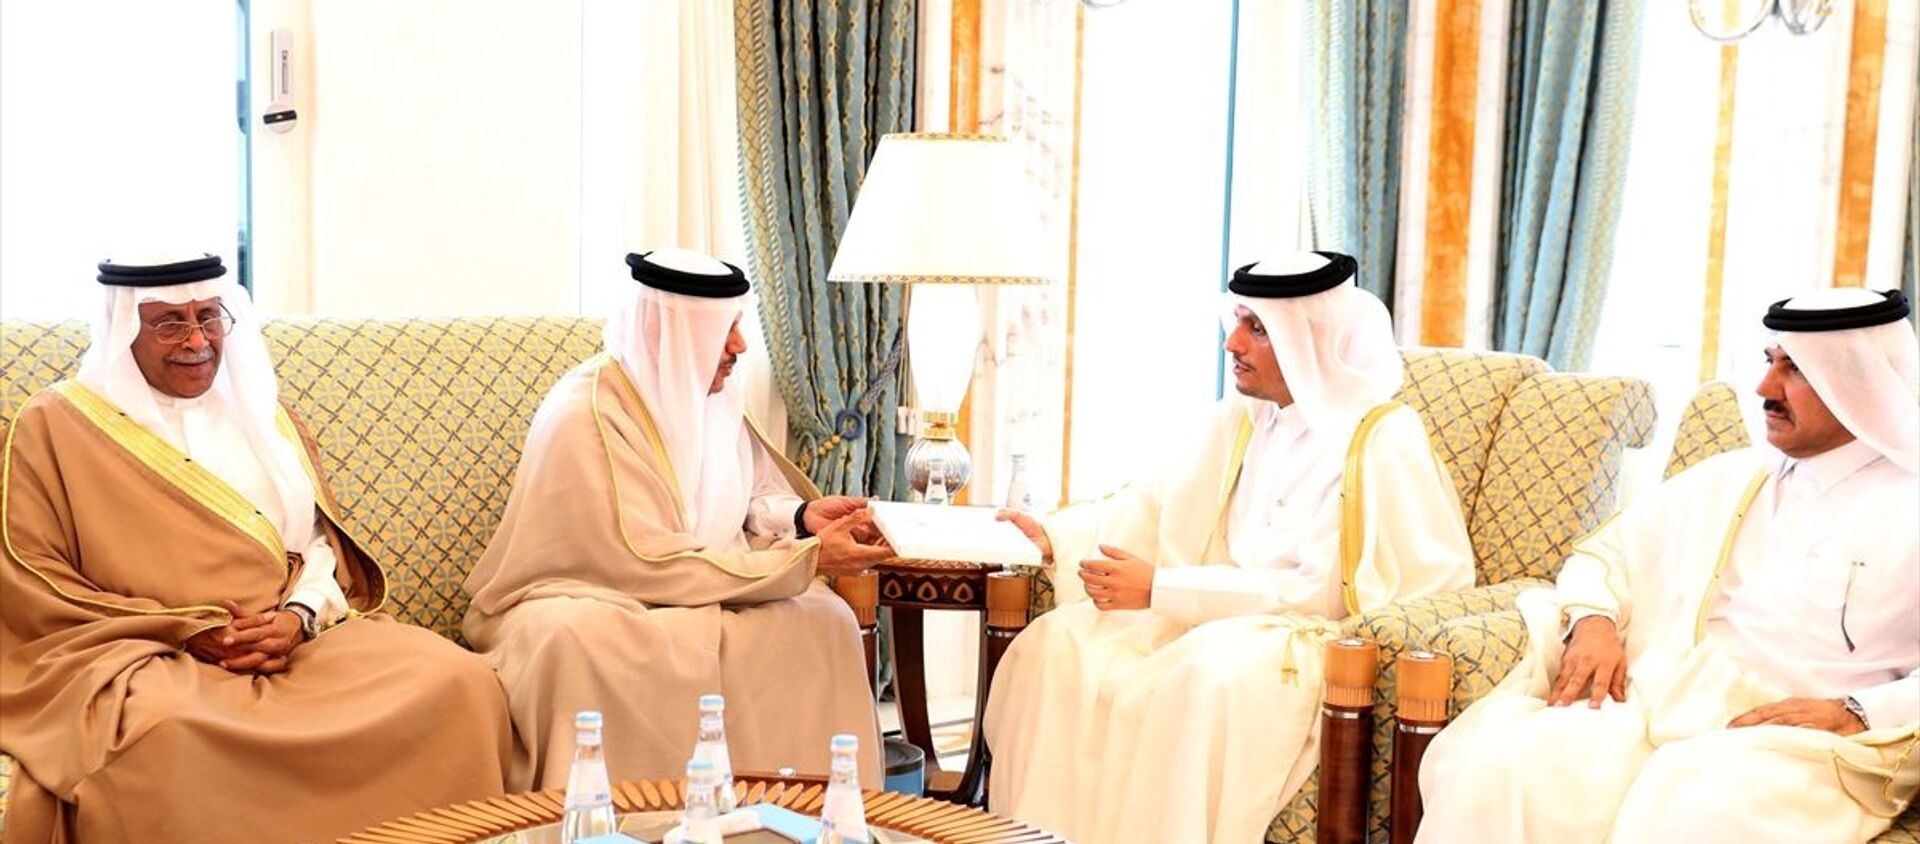 Suudi Arabistan Kralı Selman bin Abdulaziz, Katar Emiri Şeyh Temim bin Hamed Al Sani'yi Riyad'da düzenlenecek Körfez İşbirliği Konseyi (KİK) liderler zirvesine davet etti. Kral Selman'ın davet mektubu KİK Genel Sekreteri Abdullatif bin Reşid el-Zeyani (sol 2) tarafından Doha'da Katar Dışişleri Bakanı Muhammed bin Abdurrahman bin Al Sani'ye (sağ 2) iletildi. - Sputnik Türkiye, 1920, 14.02.2021